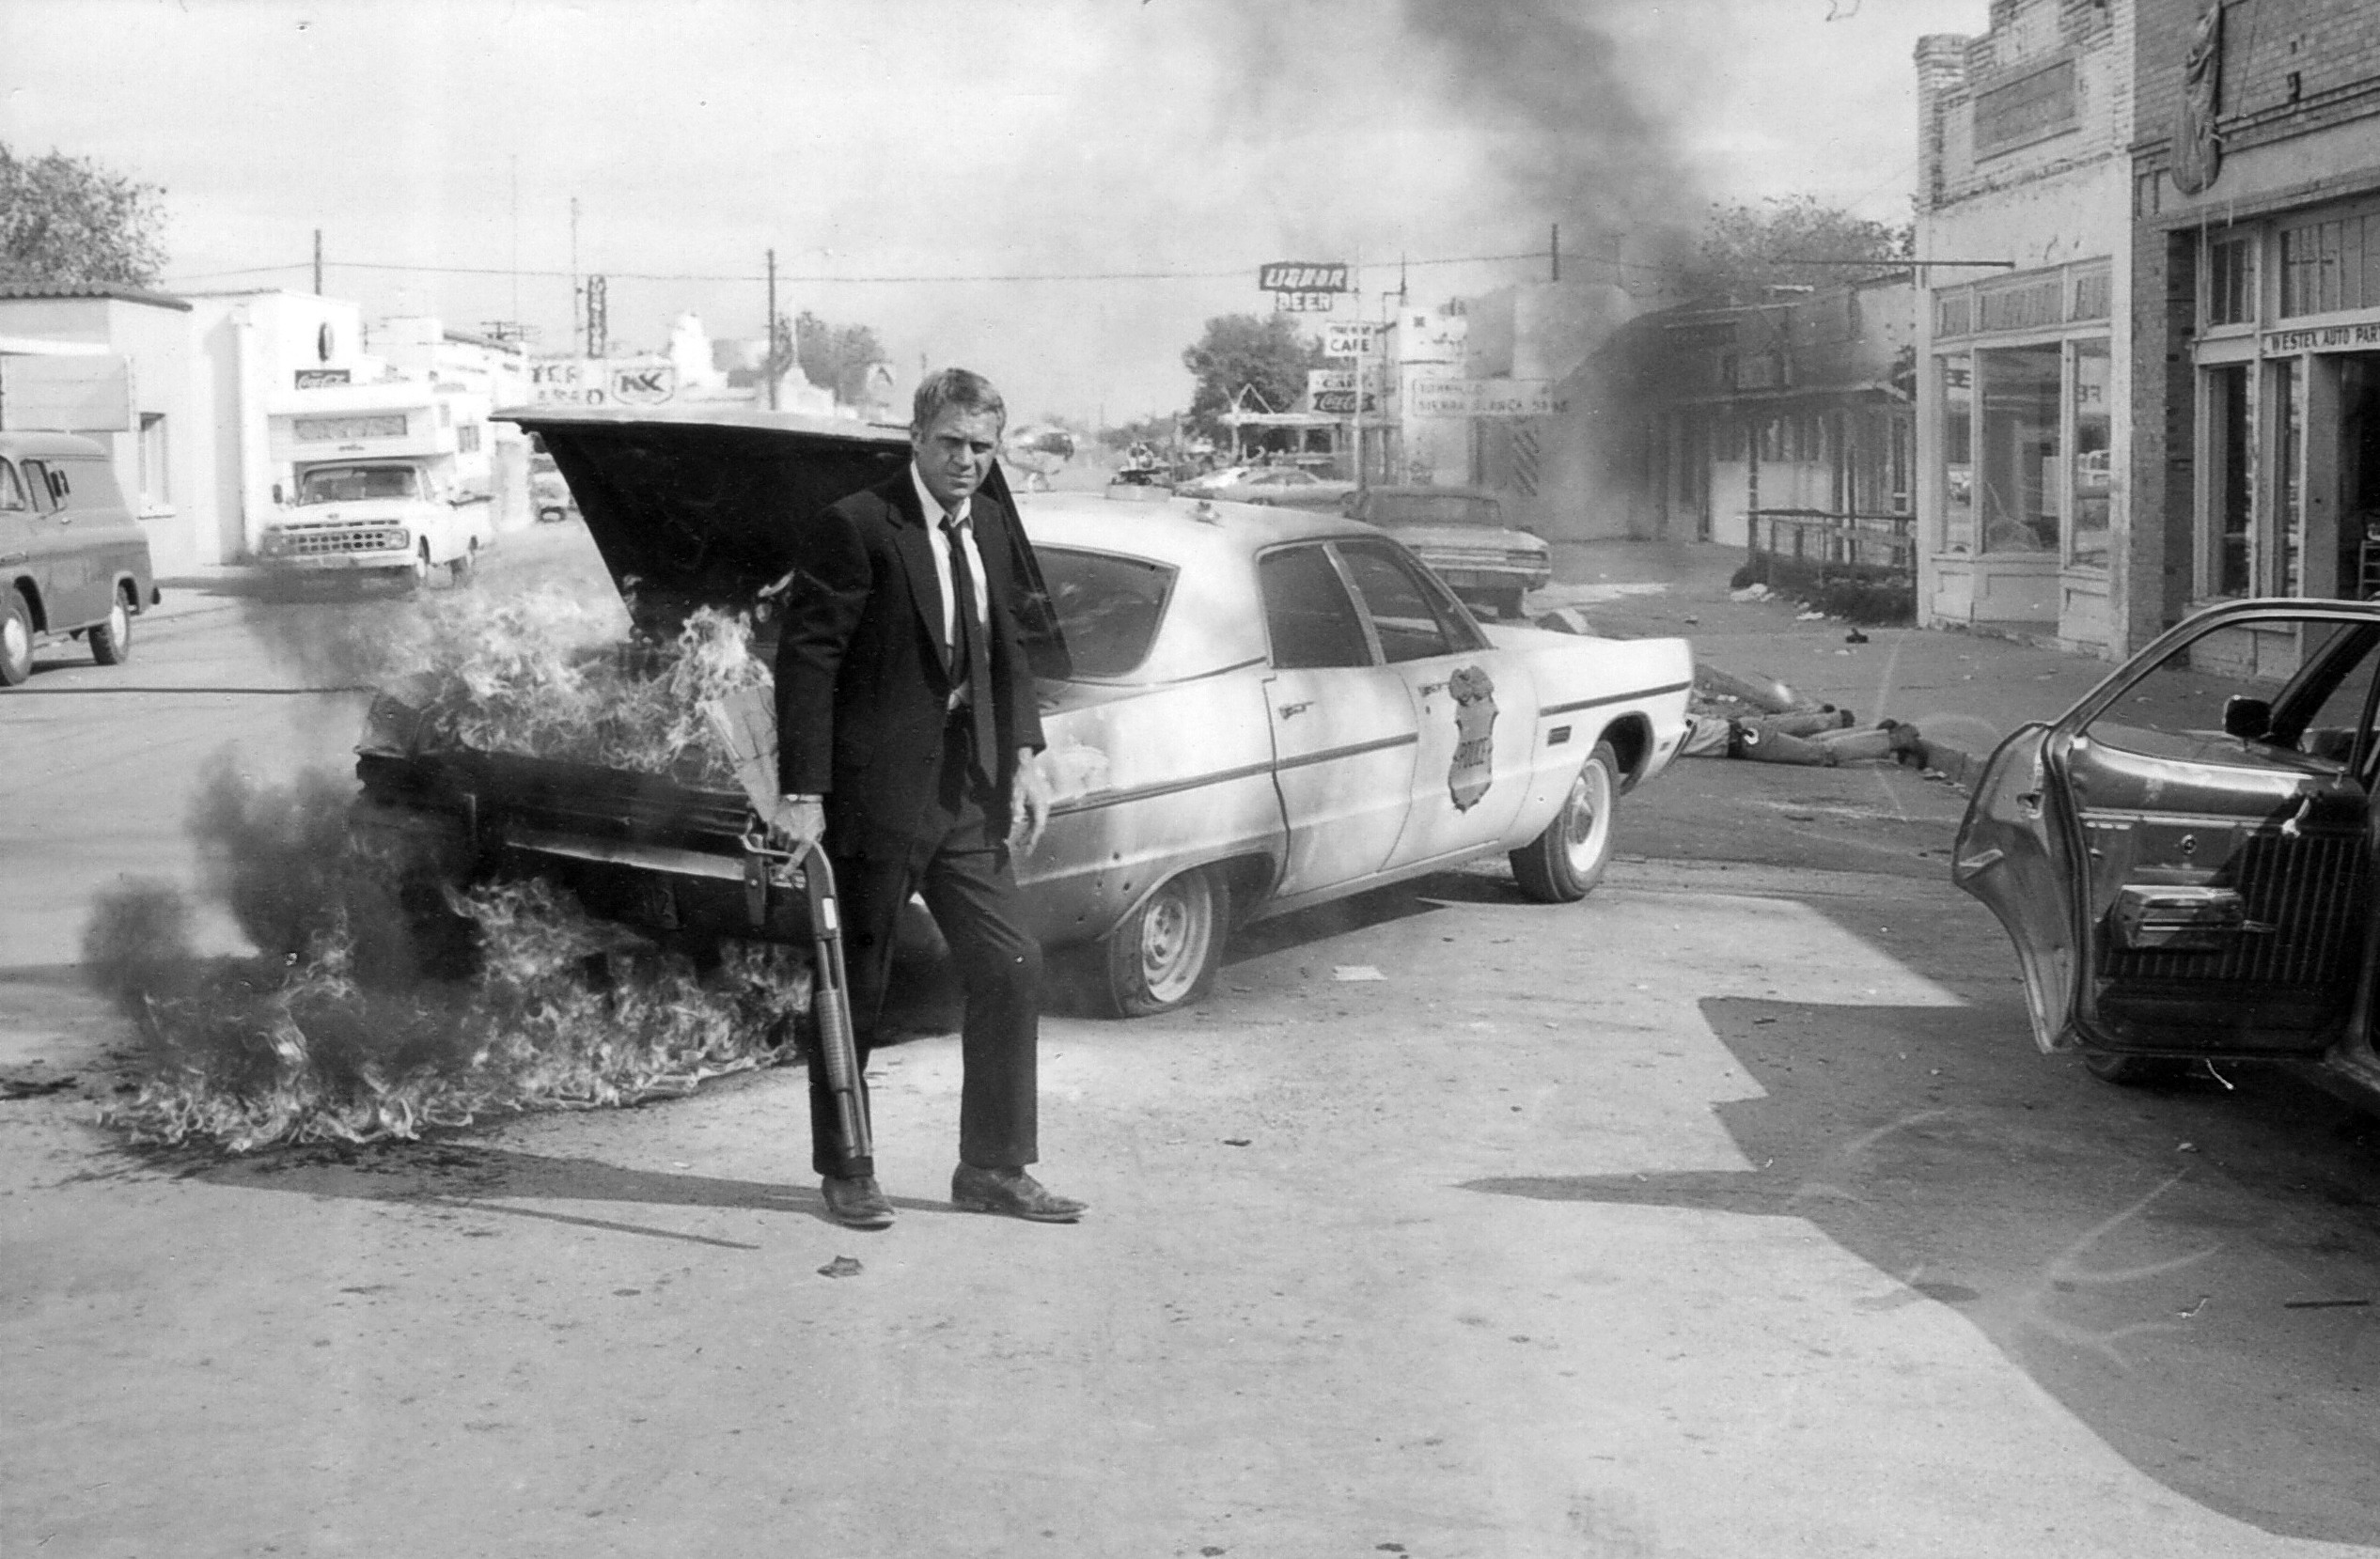 People 2532x1659 burn movies monochrome actor suits shotgun Steve McQueen The Getaway men car